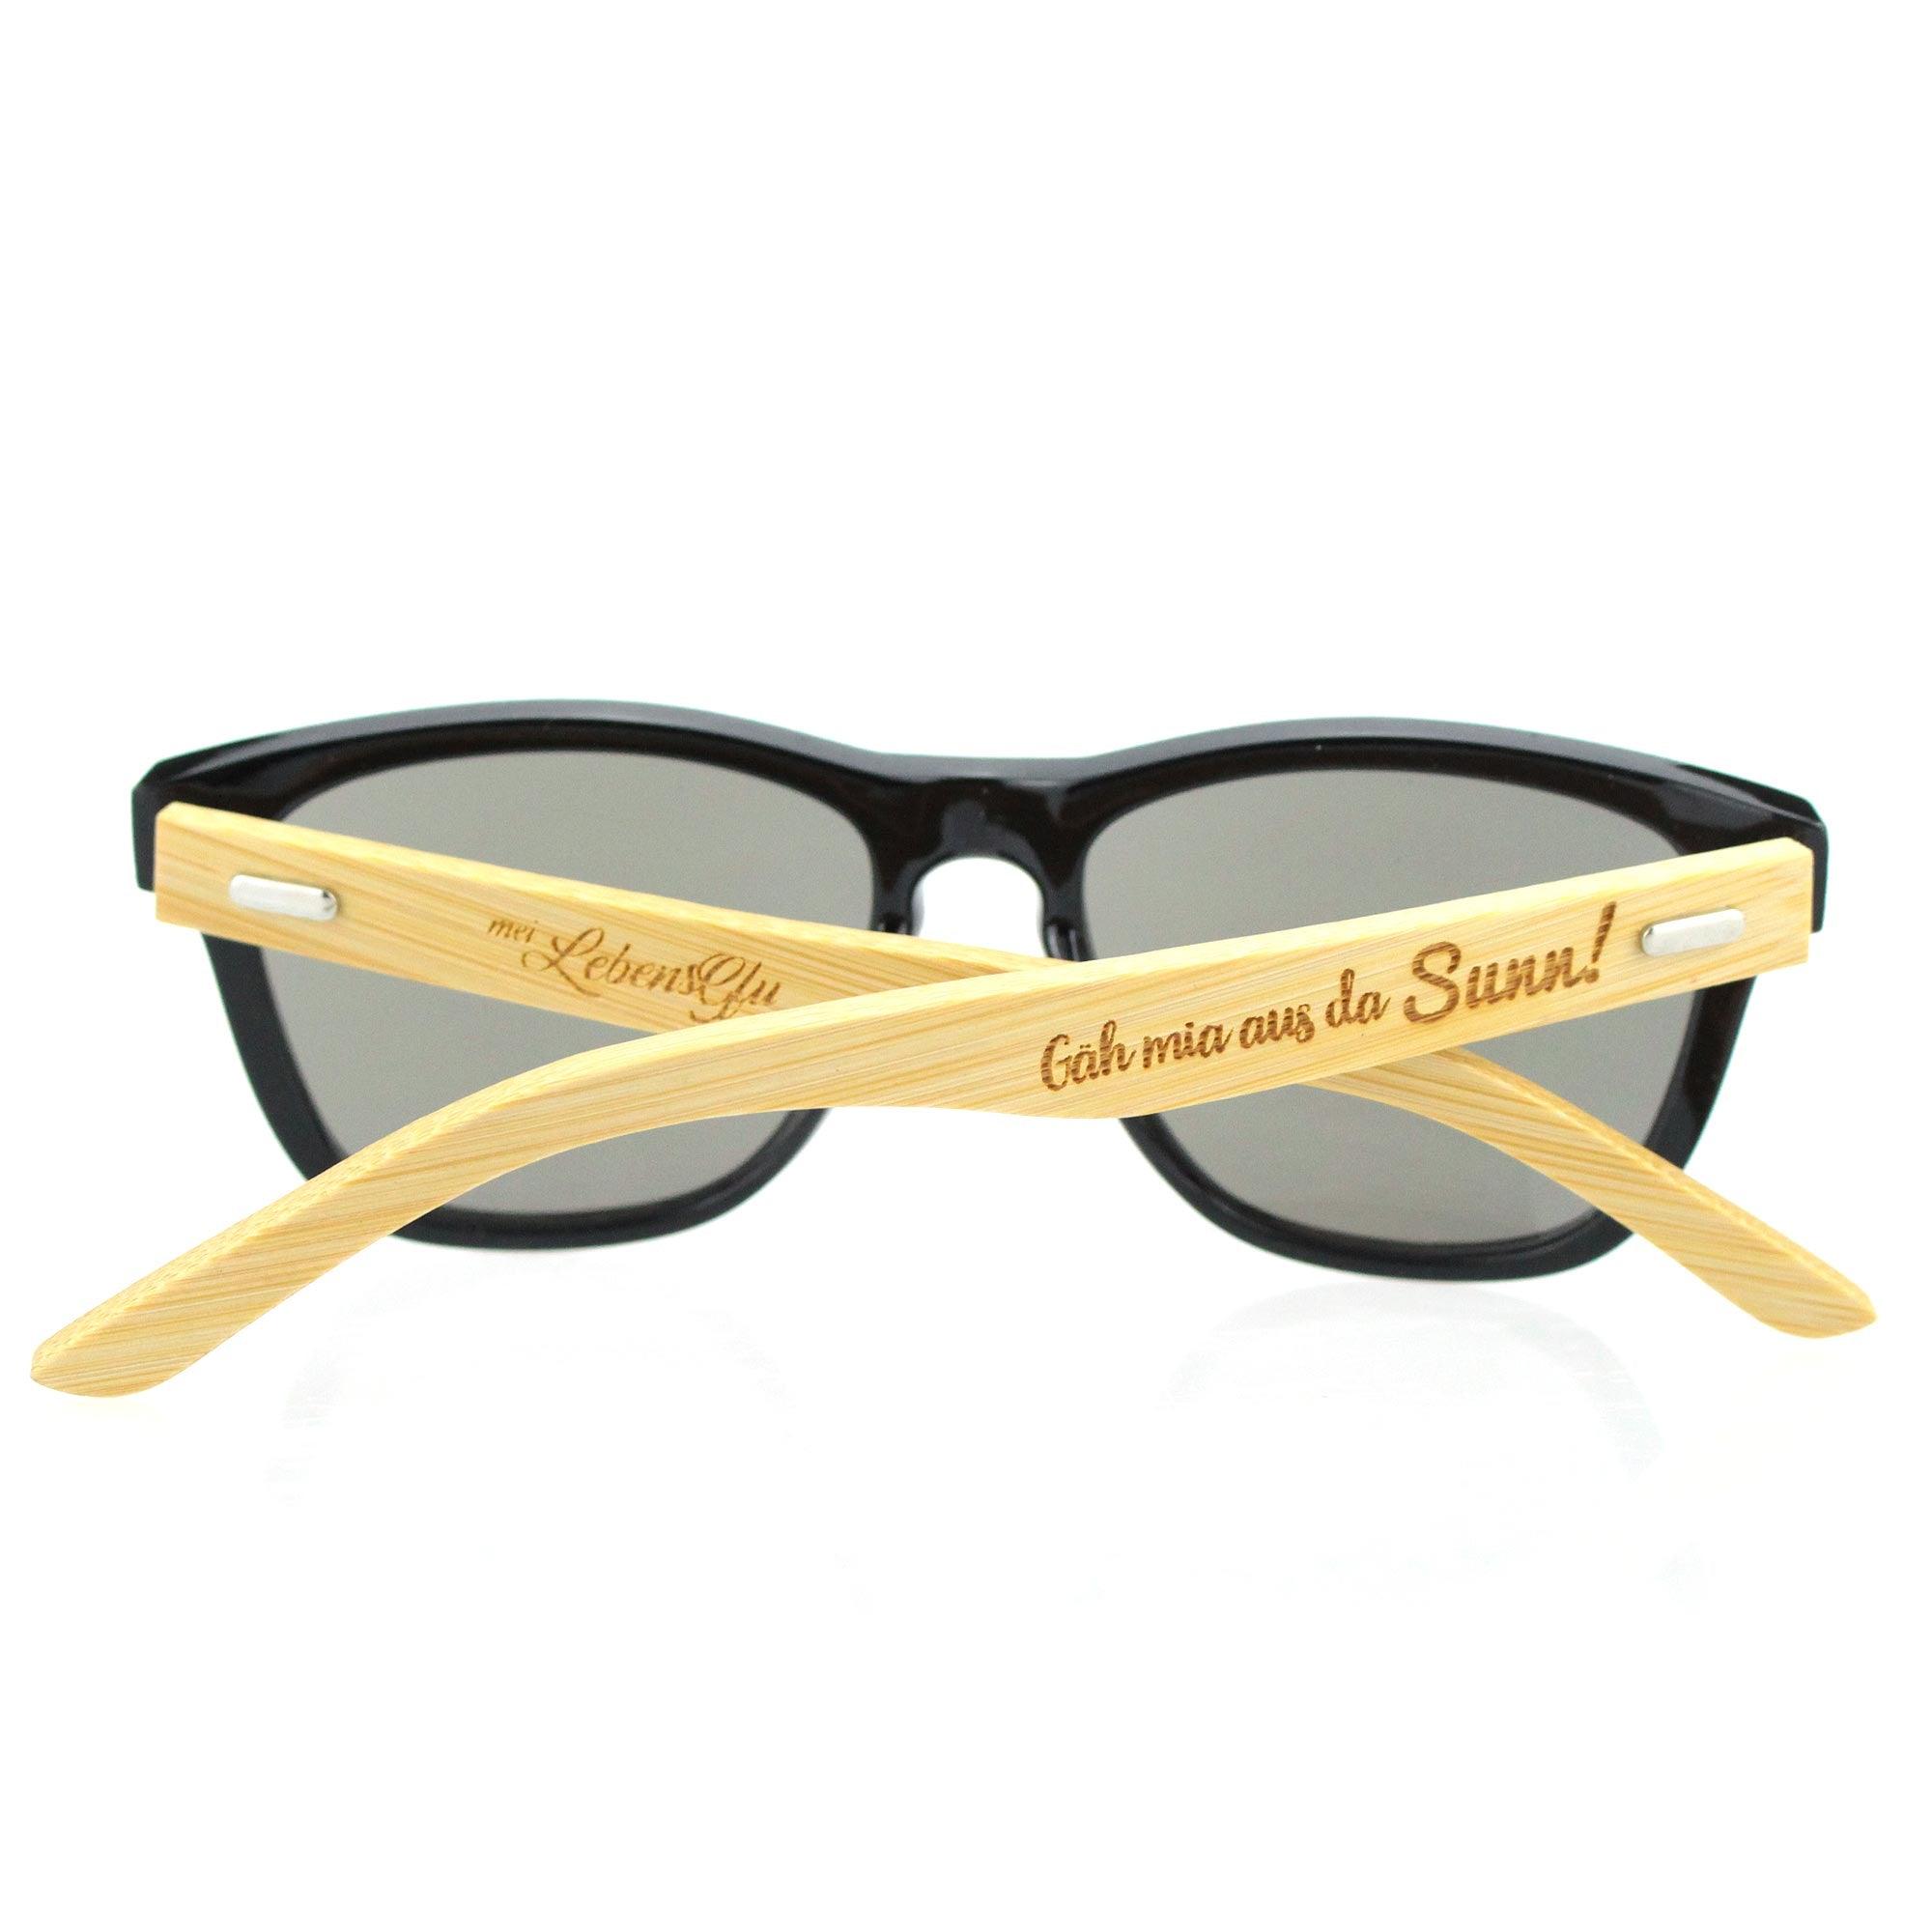 Bambus Sonnenbrille "Gäh mia aus da Sunn!" - bavariashop - mei LebensGfui